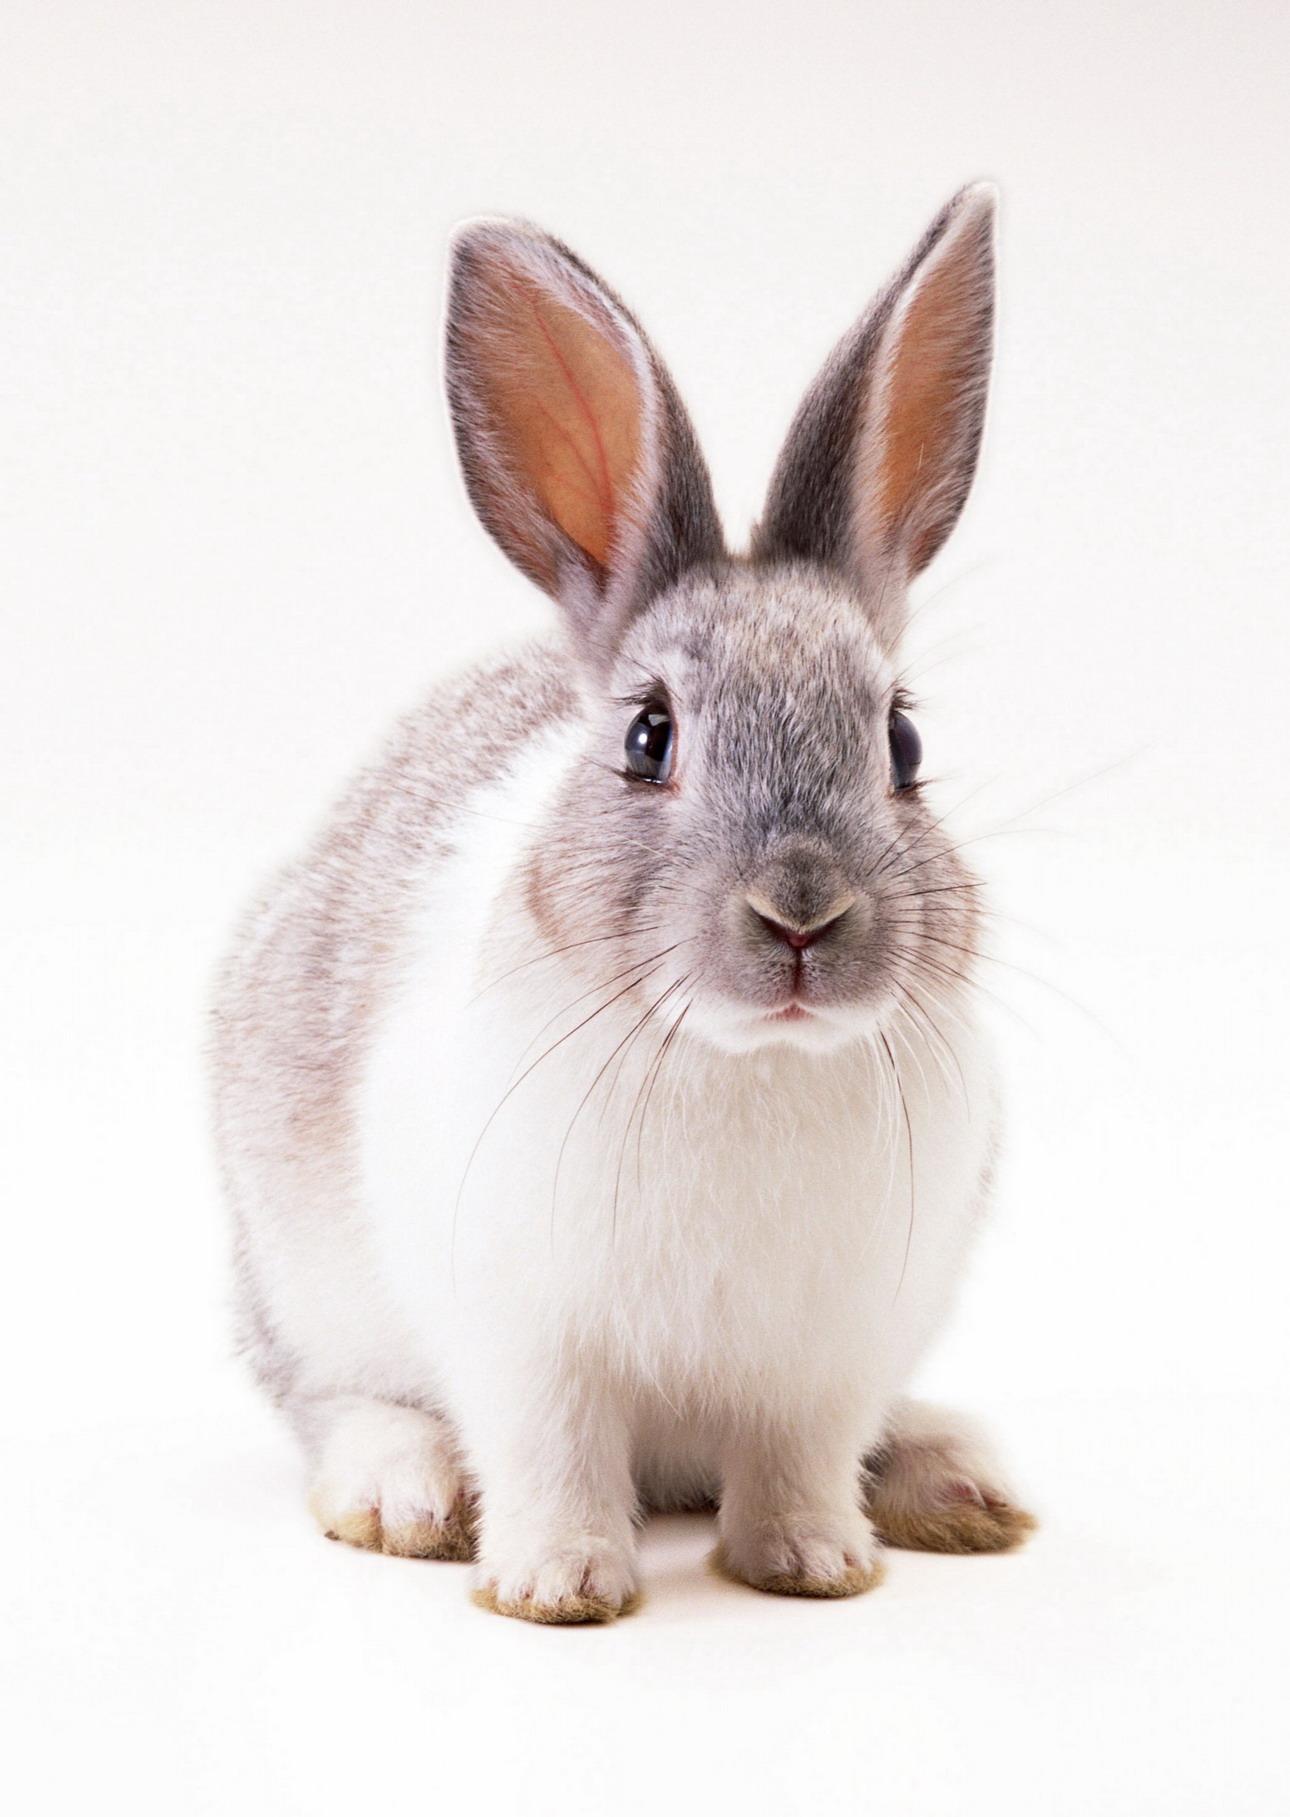 10761 免費下載壁紙 动物, 鼠害, 兔, 白色 屏保和圖片